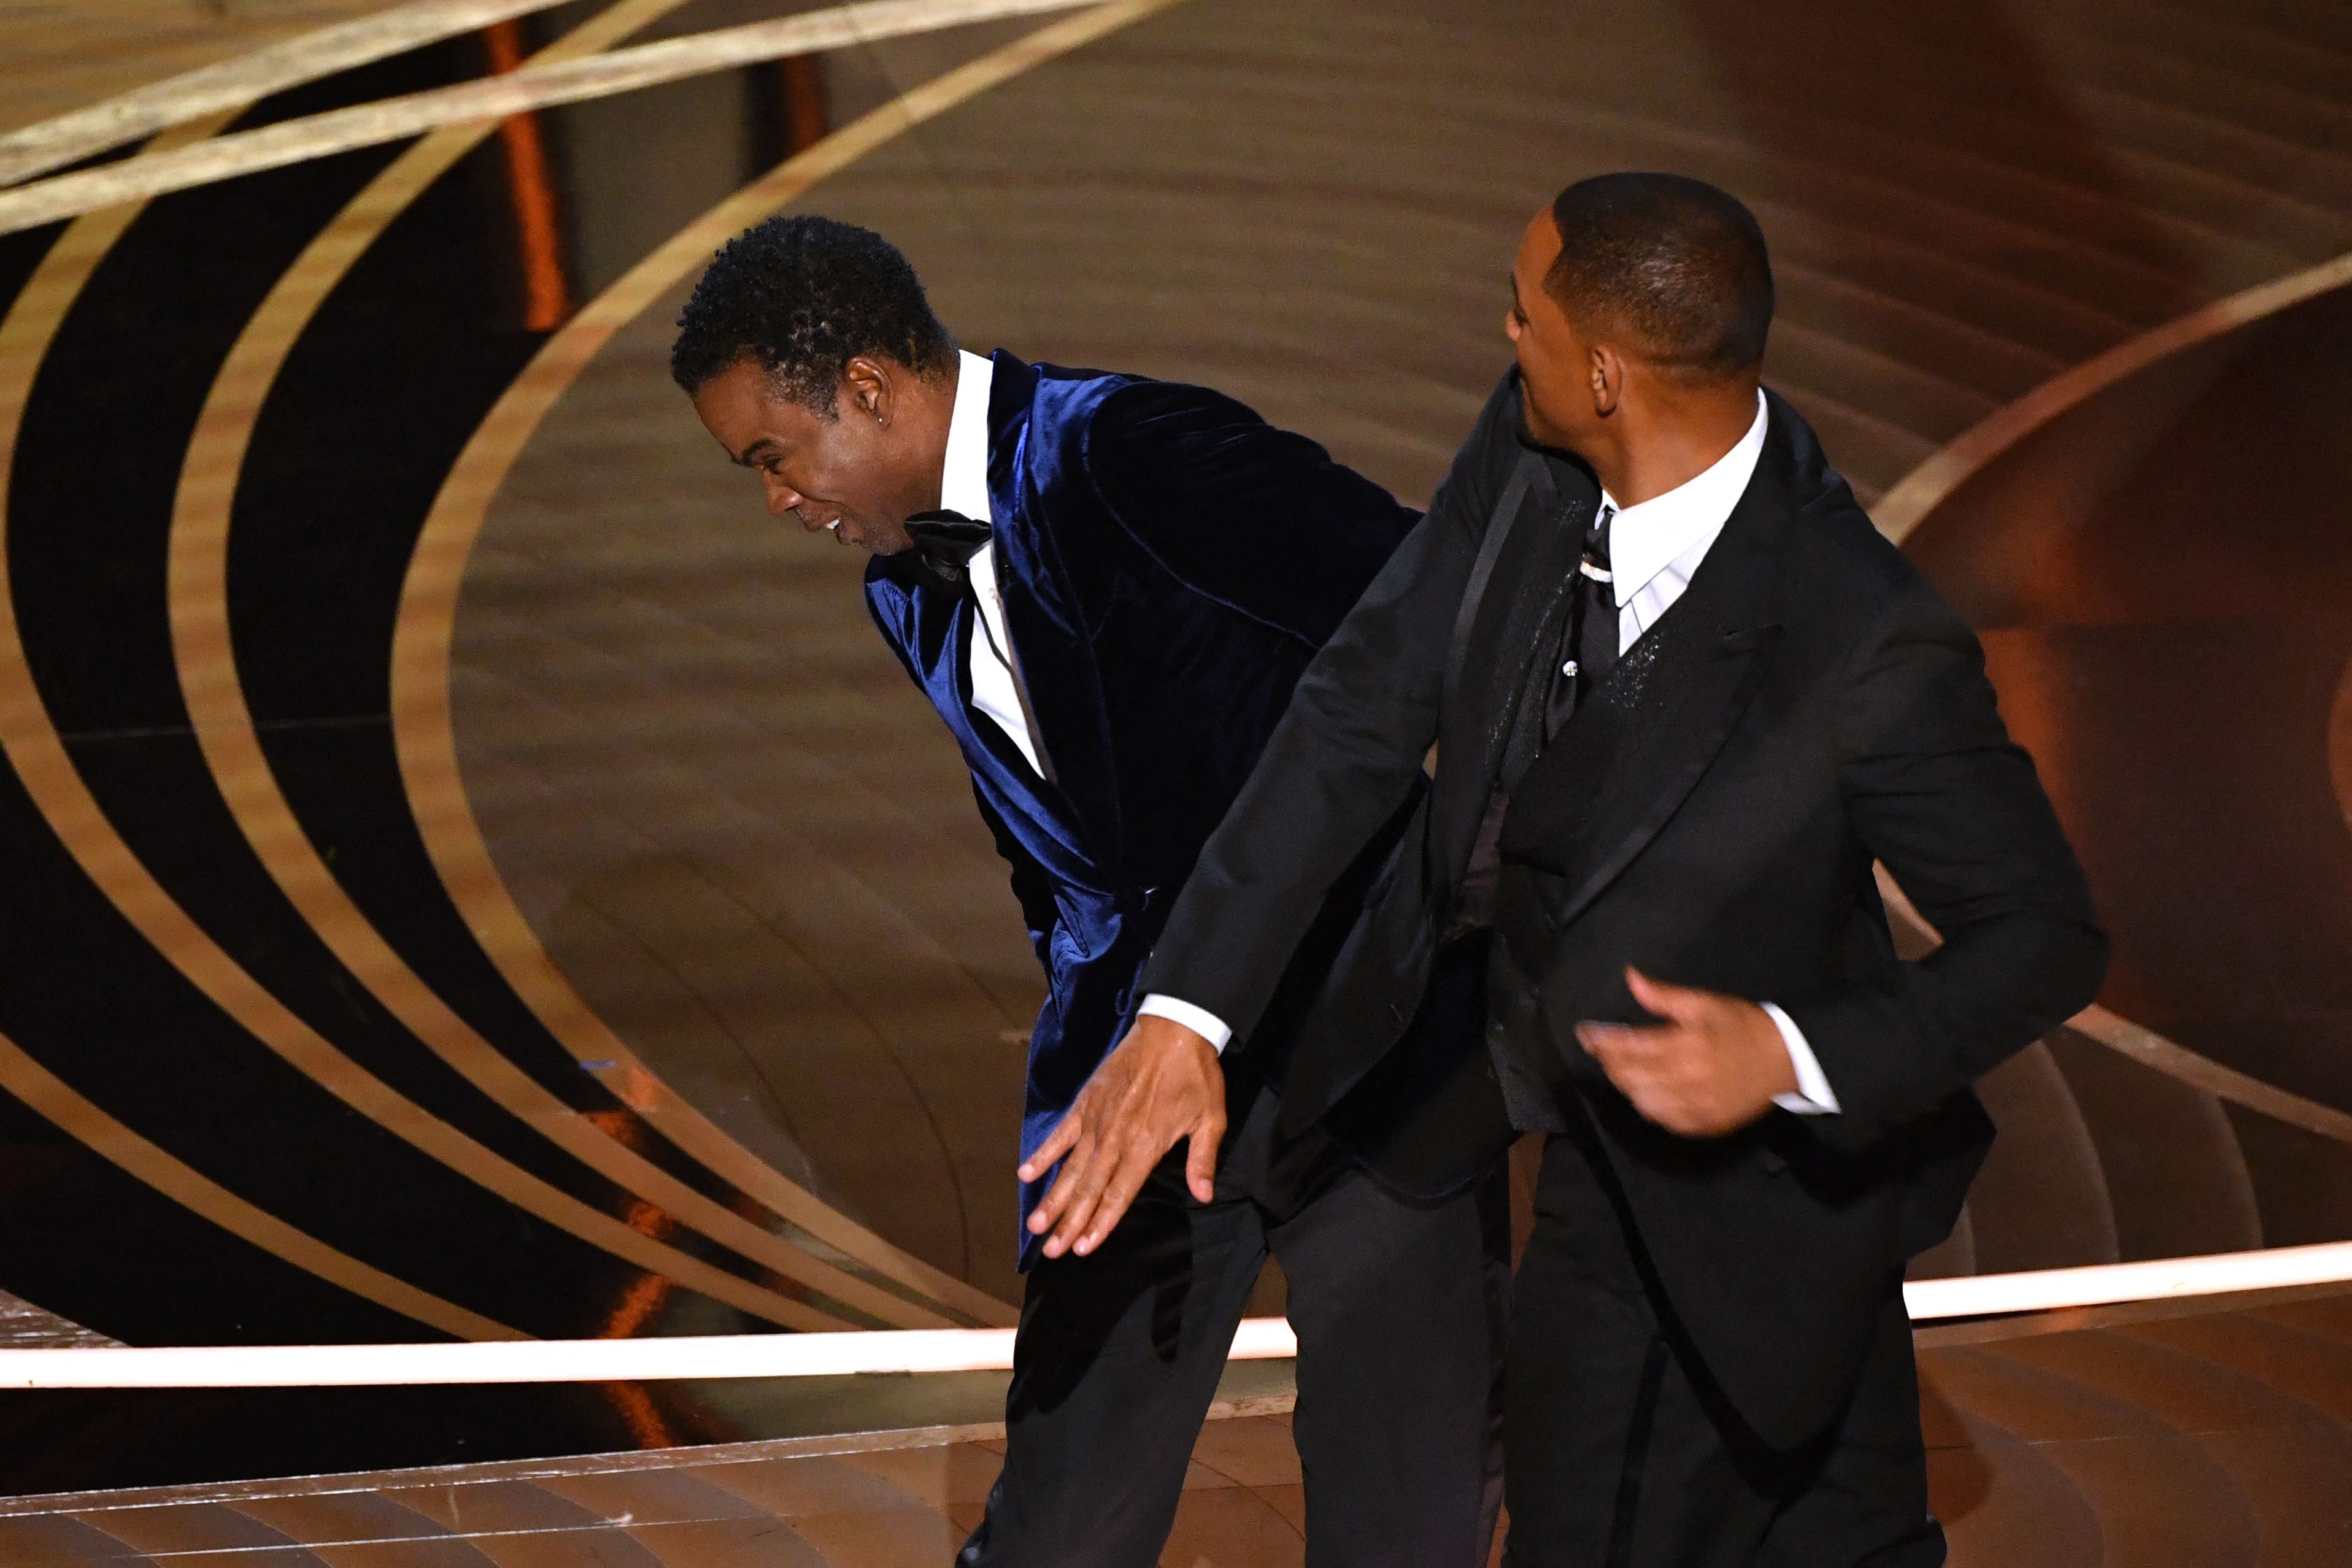 El actor estadounidense Will Smith (derecha) da una bofetada al actor estadounidense Chris Rock en el escenario durante la 94 a edición de los Oscar en el Dolby Theater en Hollywood, California